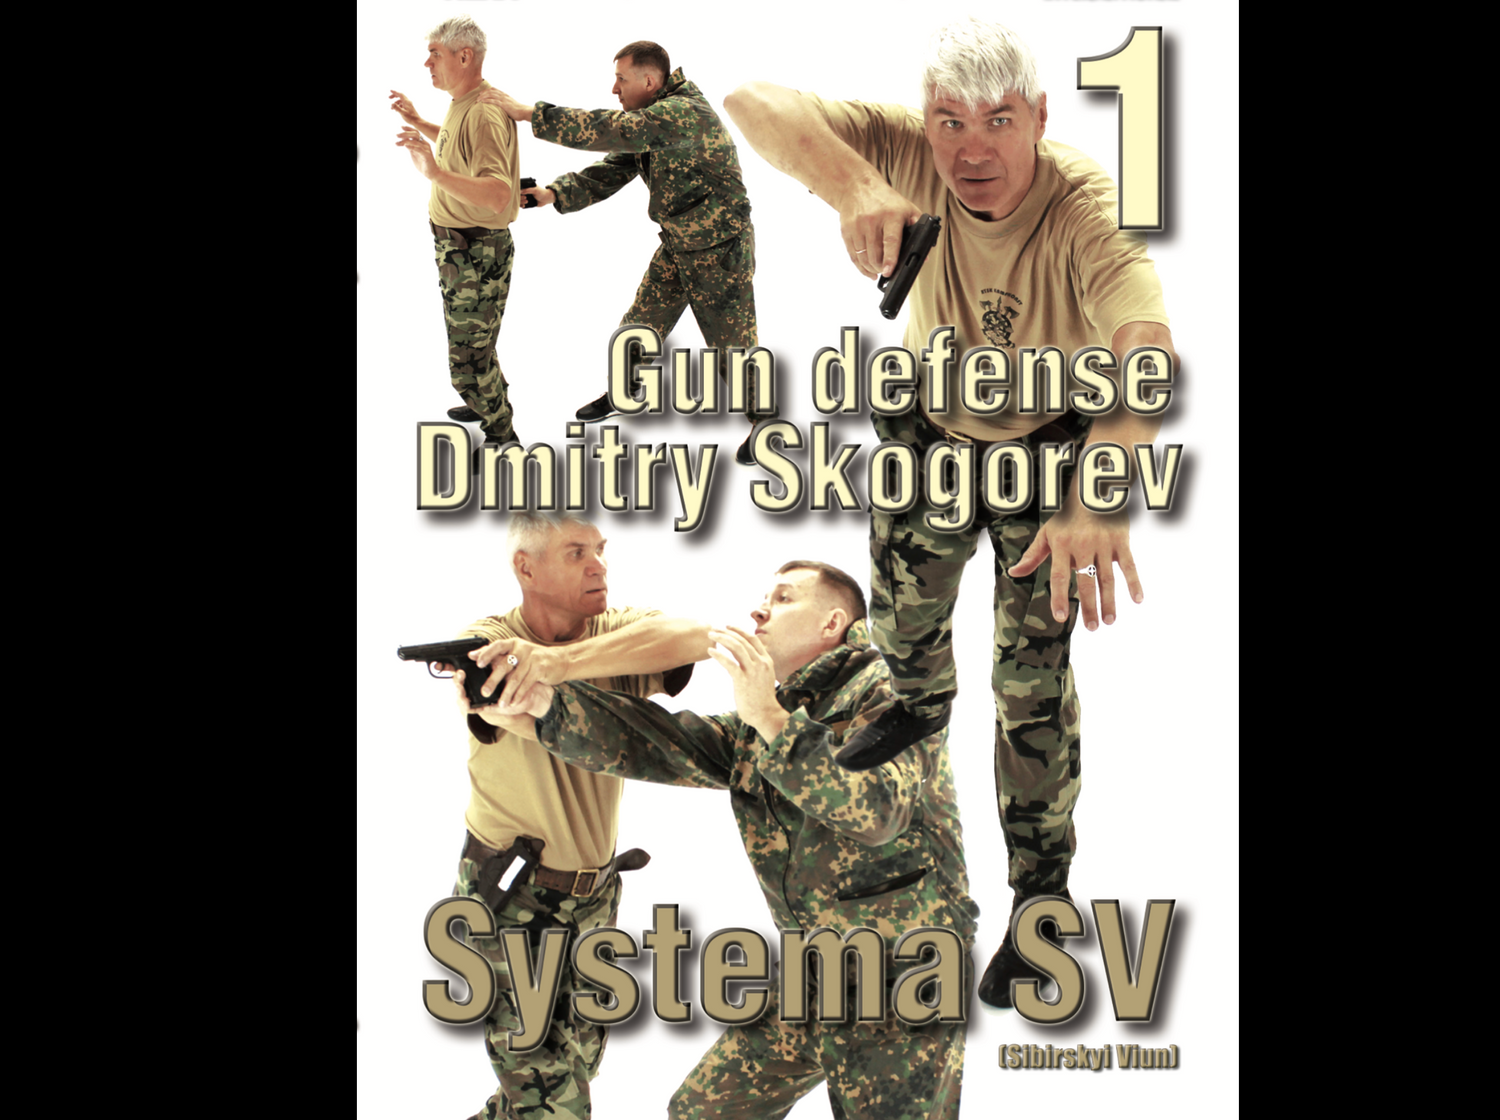 Systema SV Gun Defense Vol 1 with Dmitry Skogorev (On Demand)